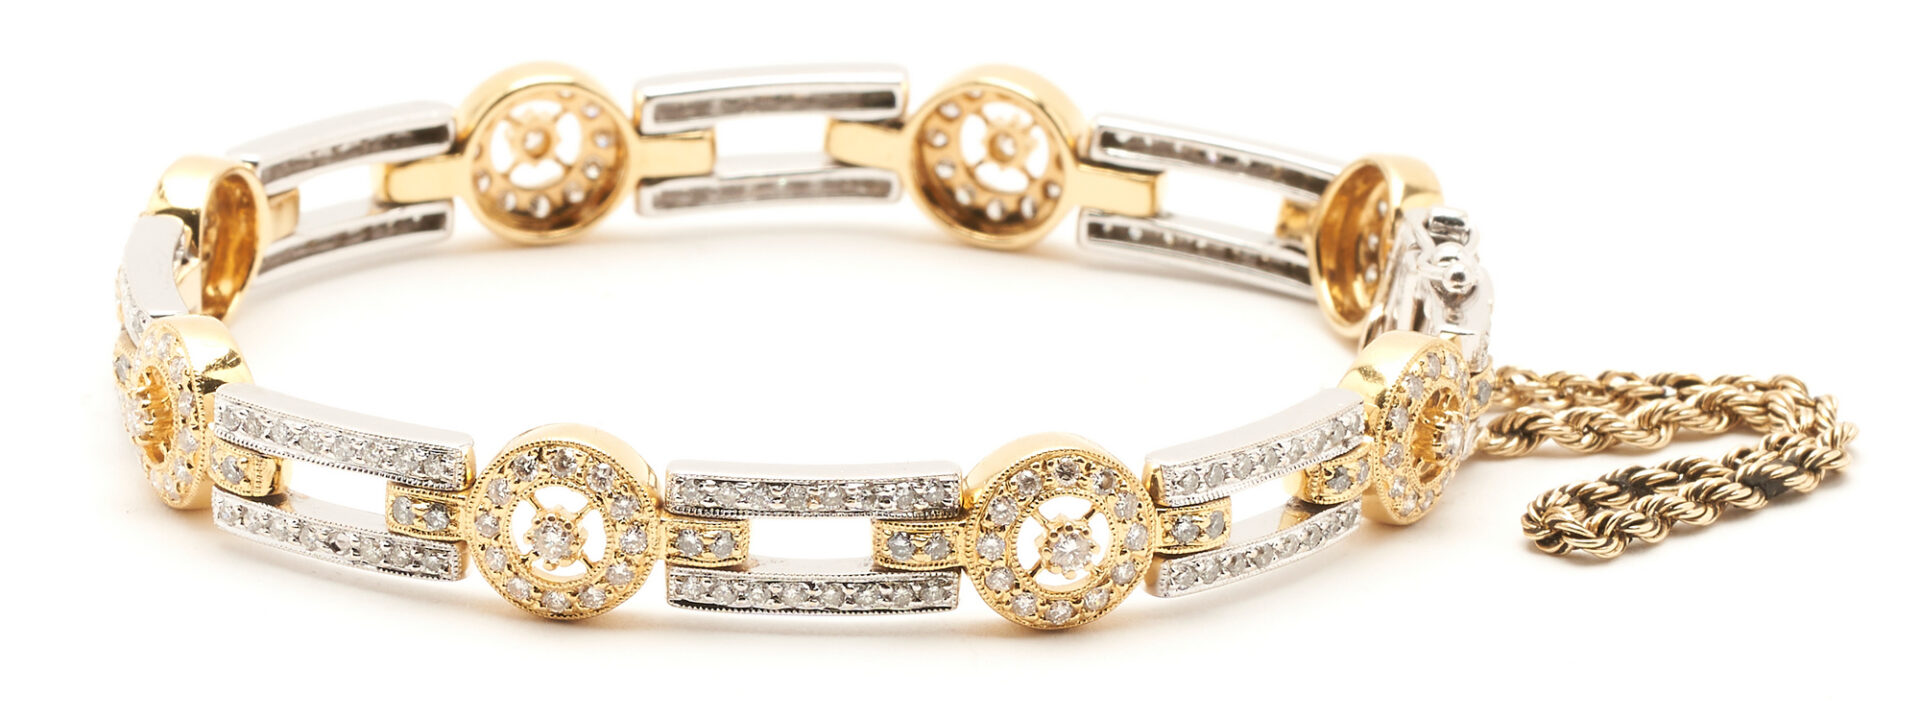 Lot 817: 18K Gold & Diamond Bracelet